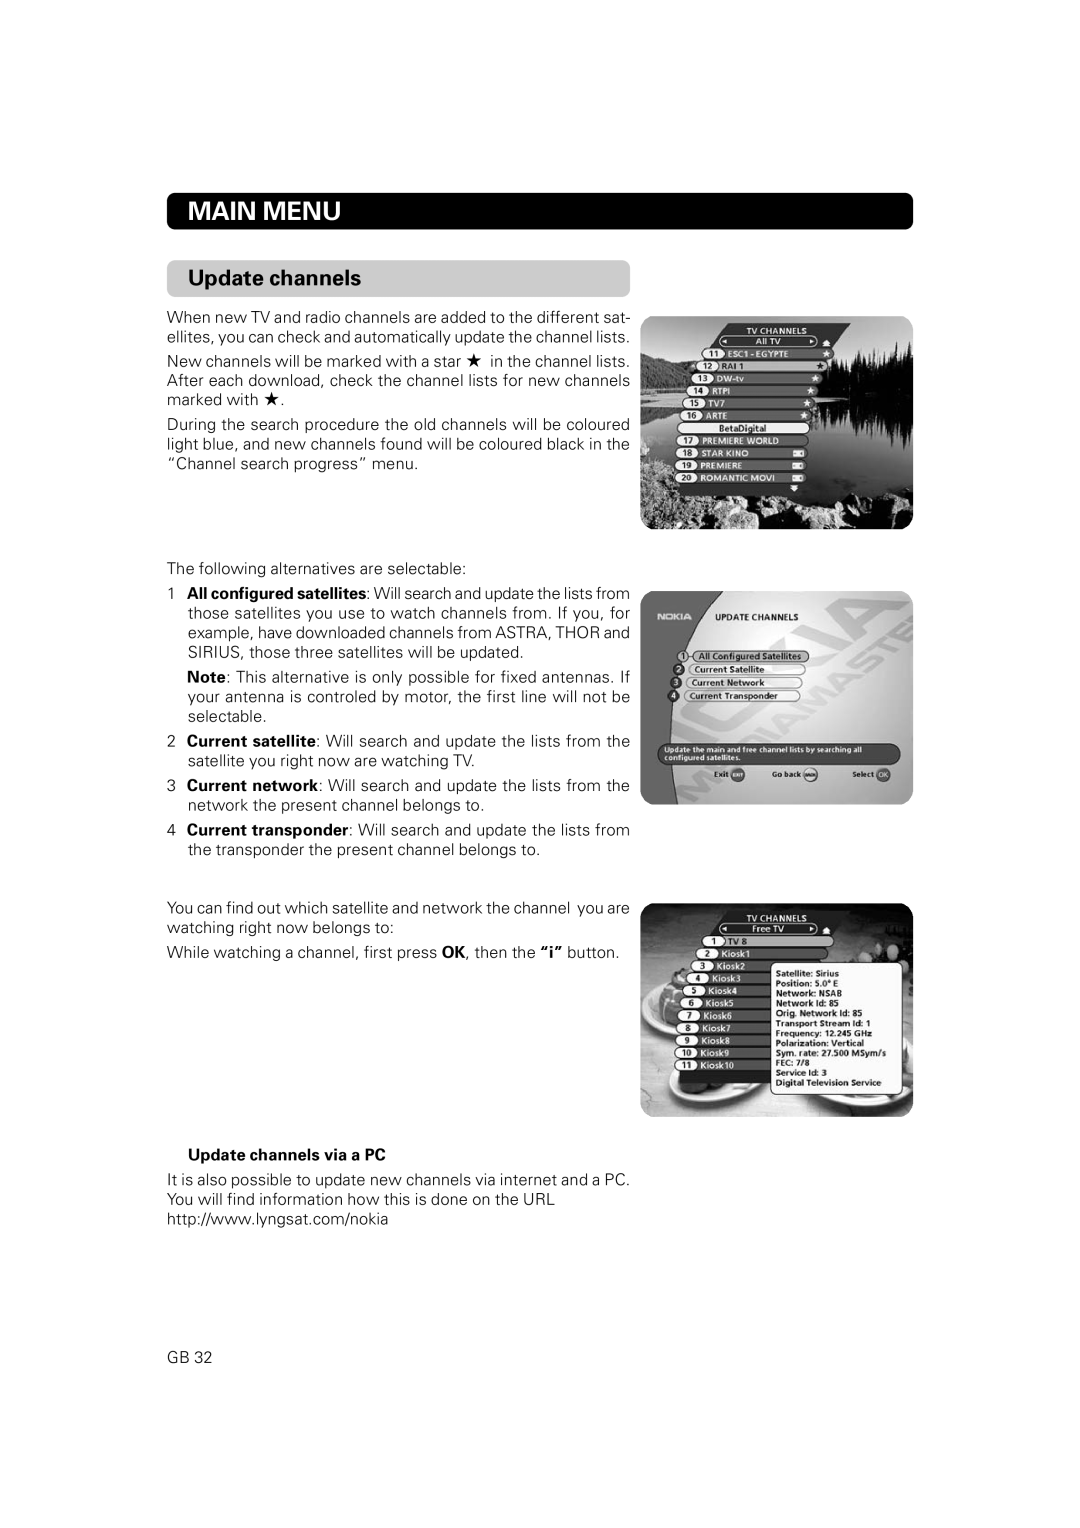 Nokia 9802 S owner manual Main Menu, Update channels via a PC 